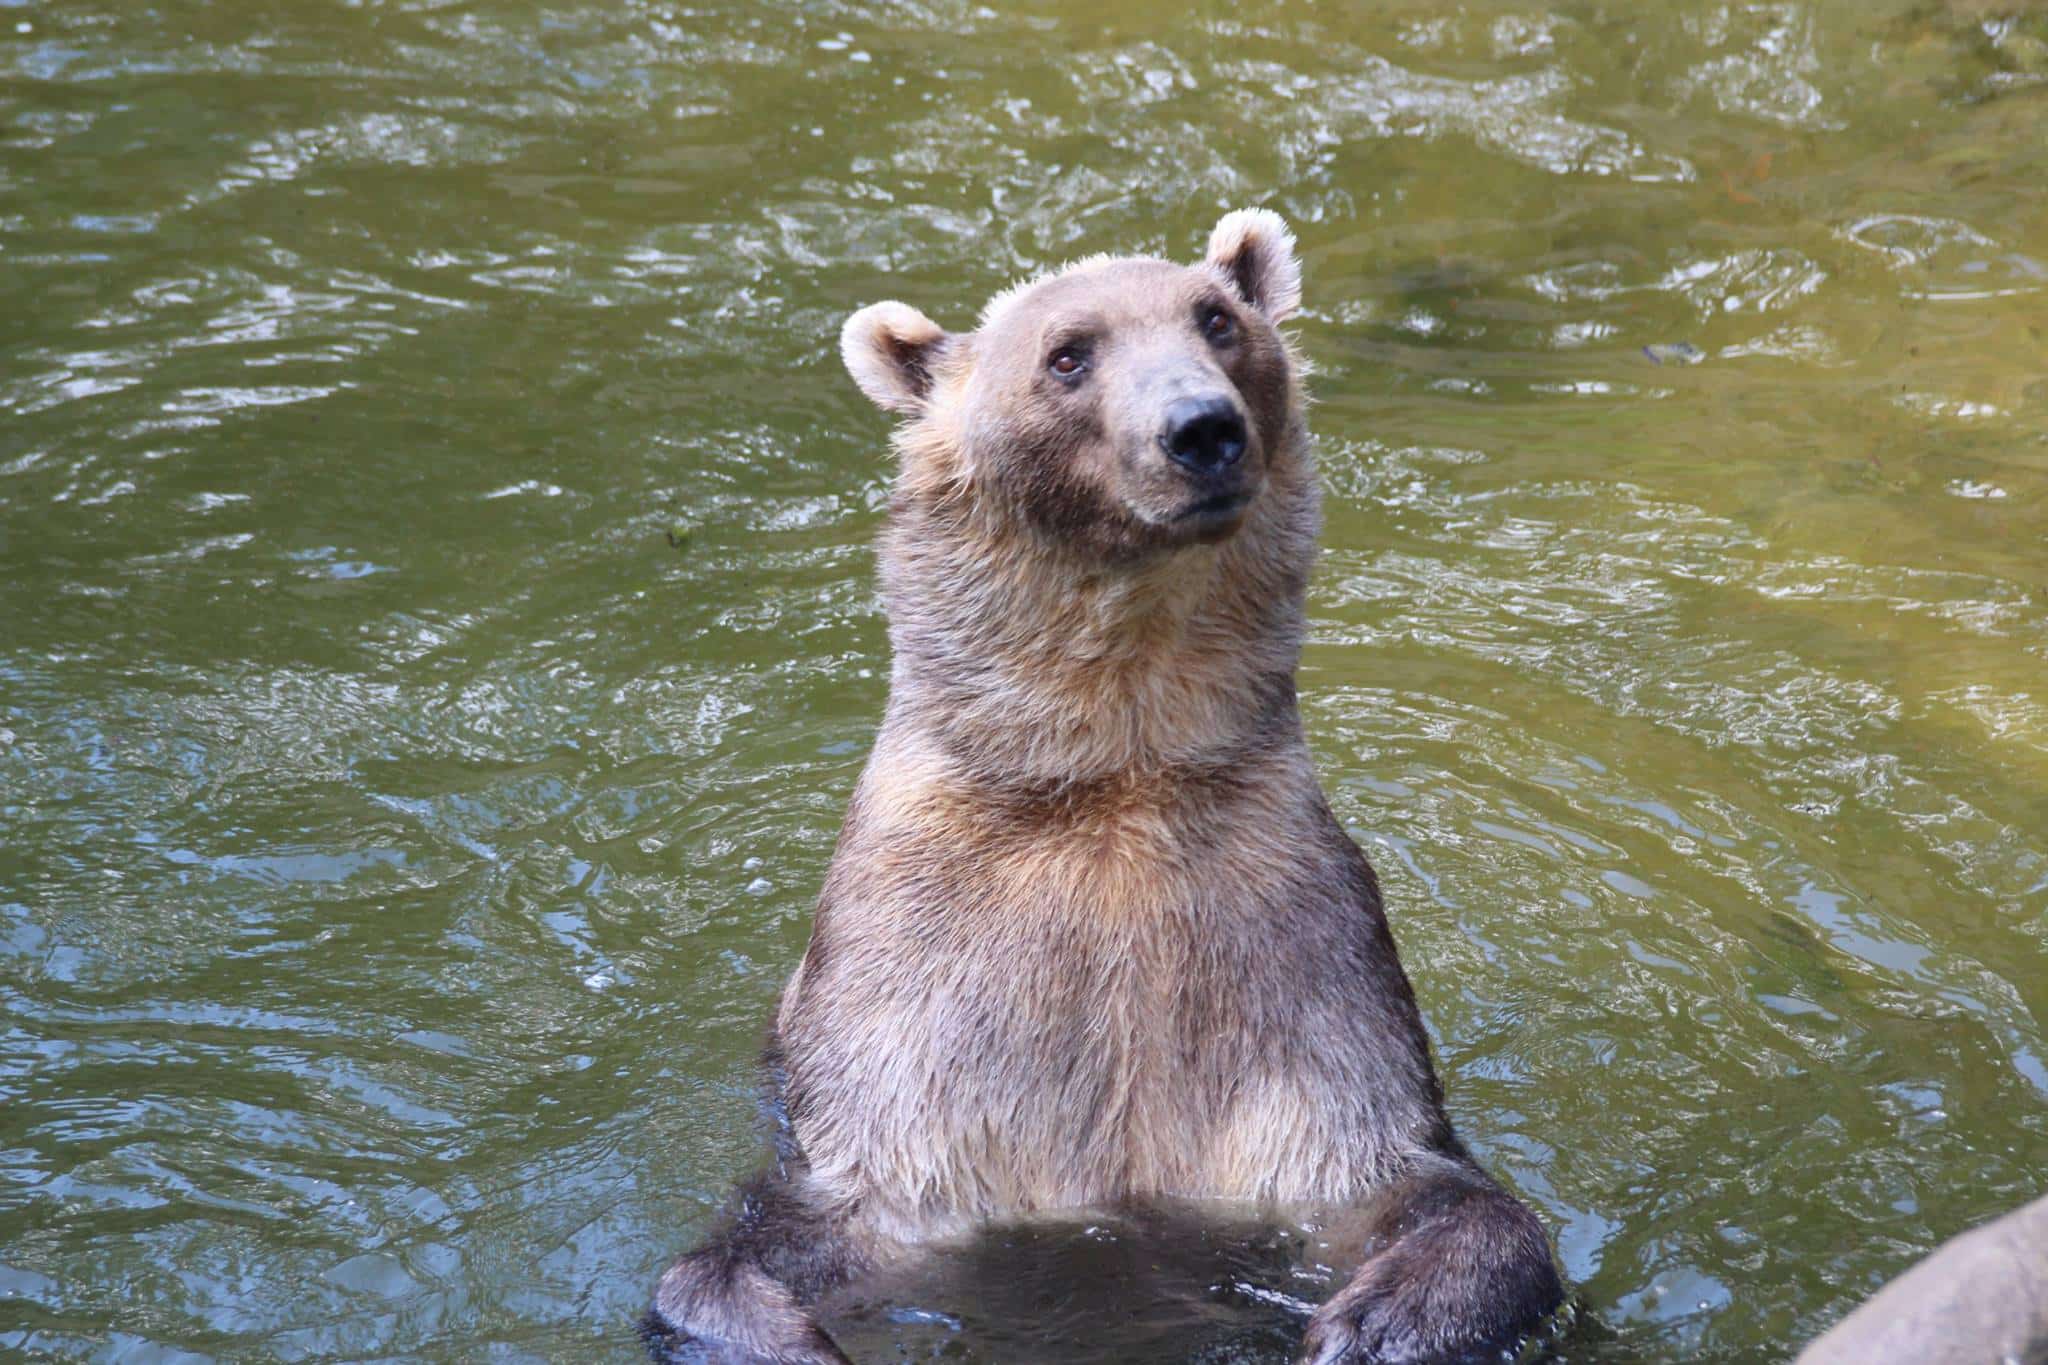 Grolar Bear Or Pizzly: All About The Grizzly-Polar Bear Hybrid